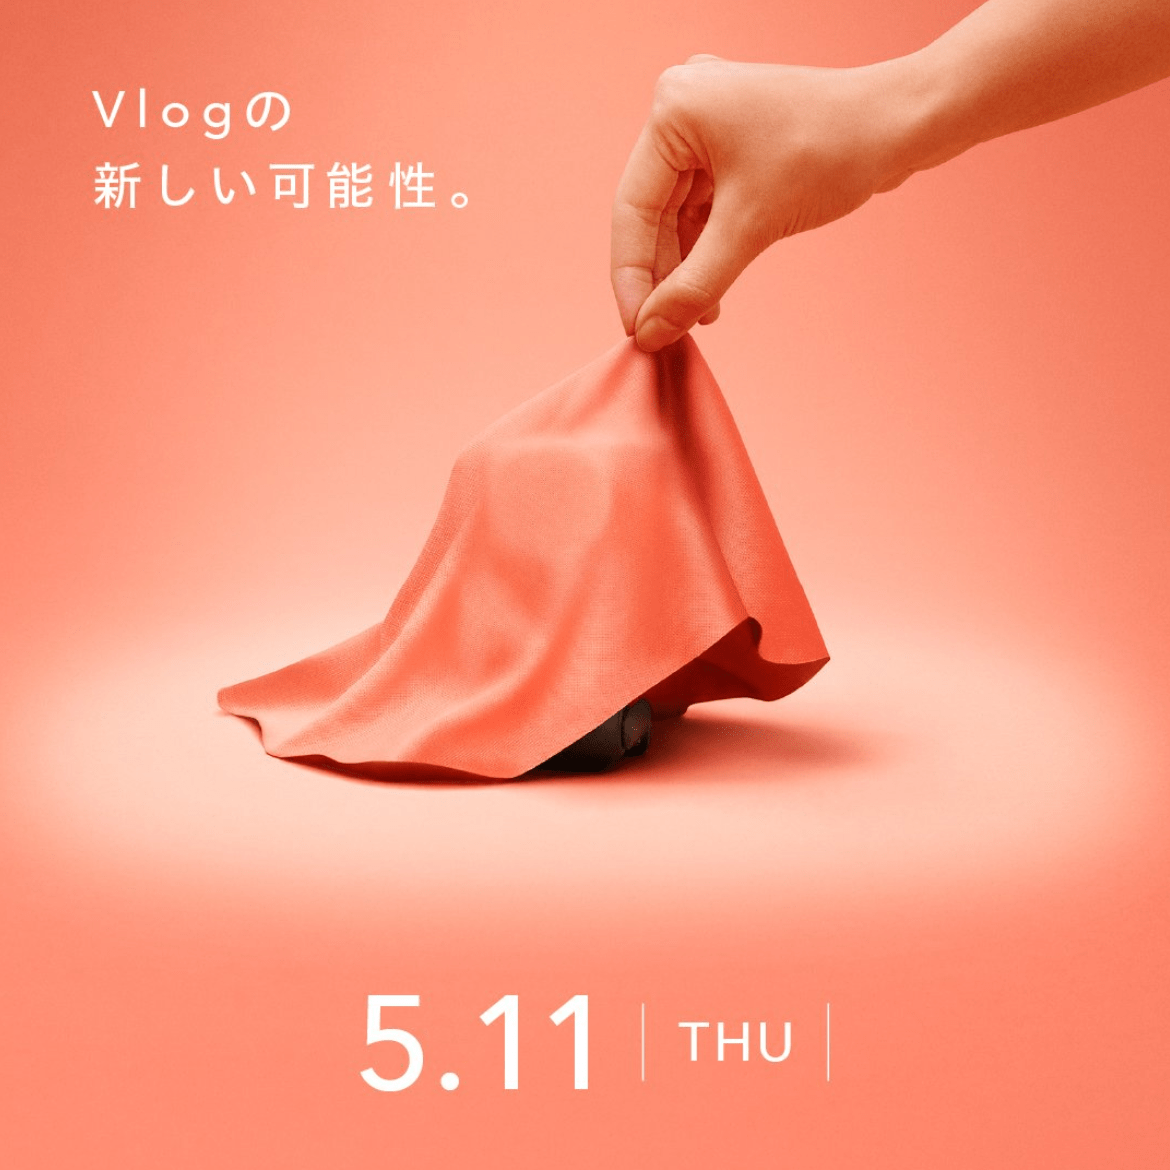 佳能将于5月11日发布Vlog相关产品 海报展示新品一角外观